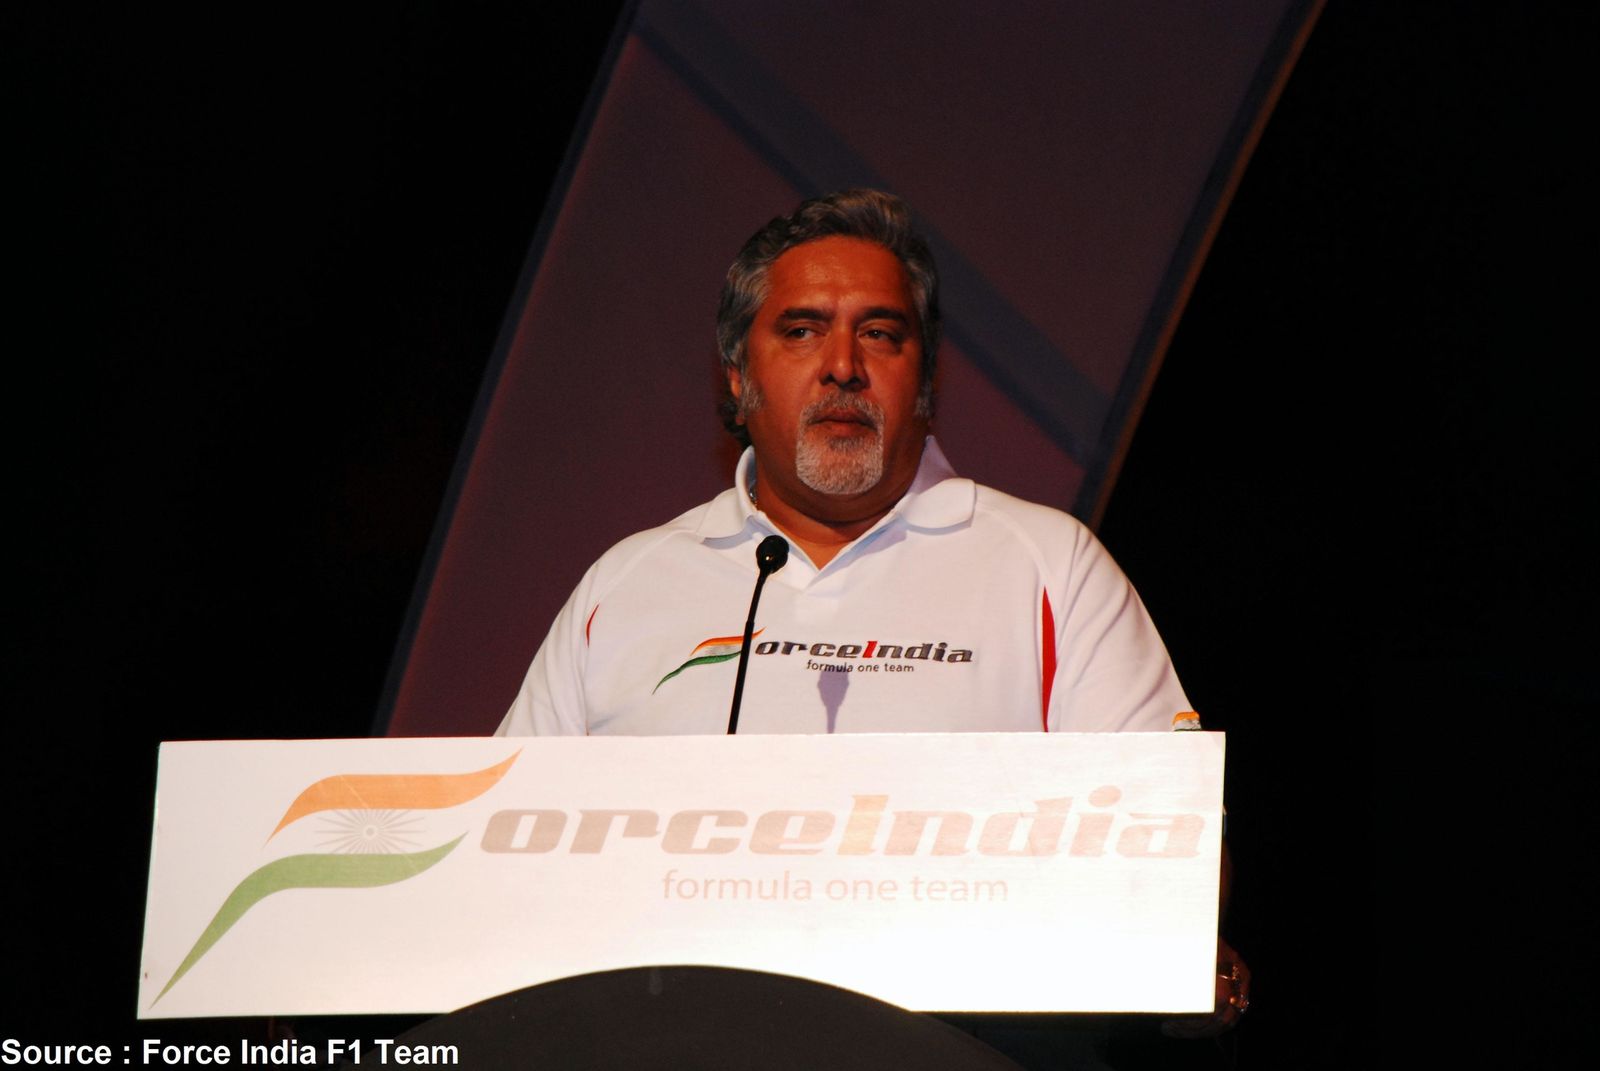 Toutes les photos liées à l'actualité de Force India